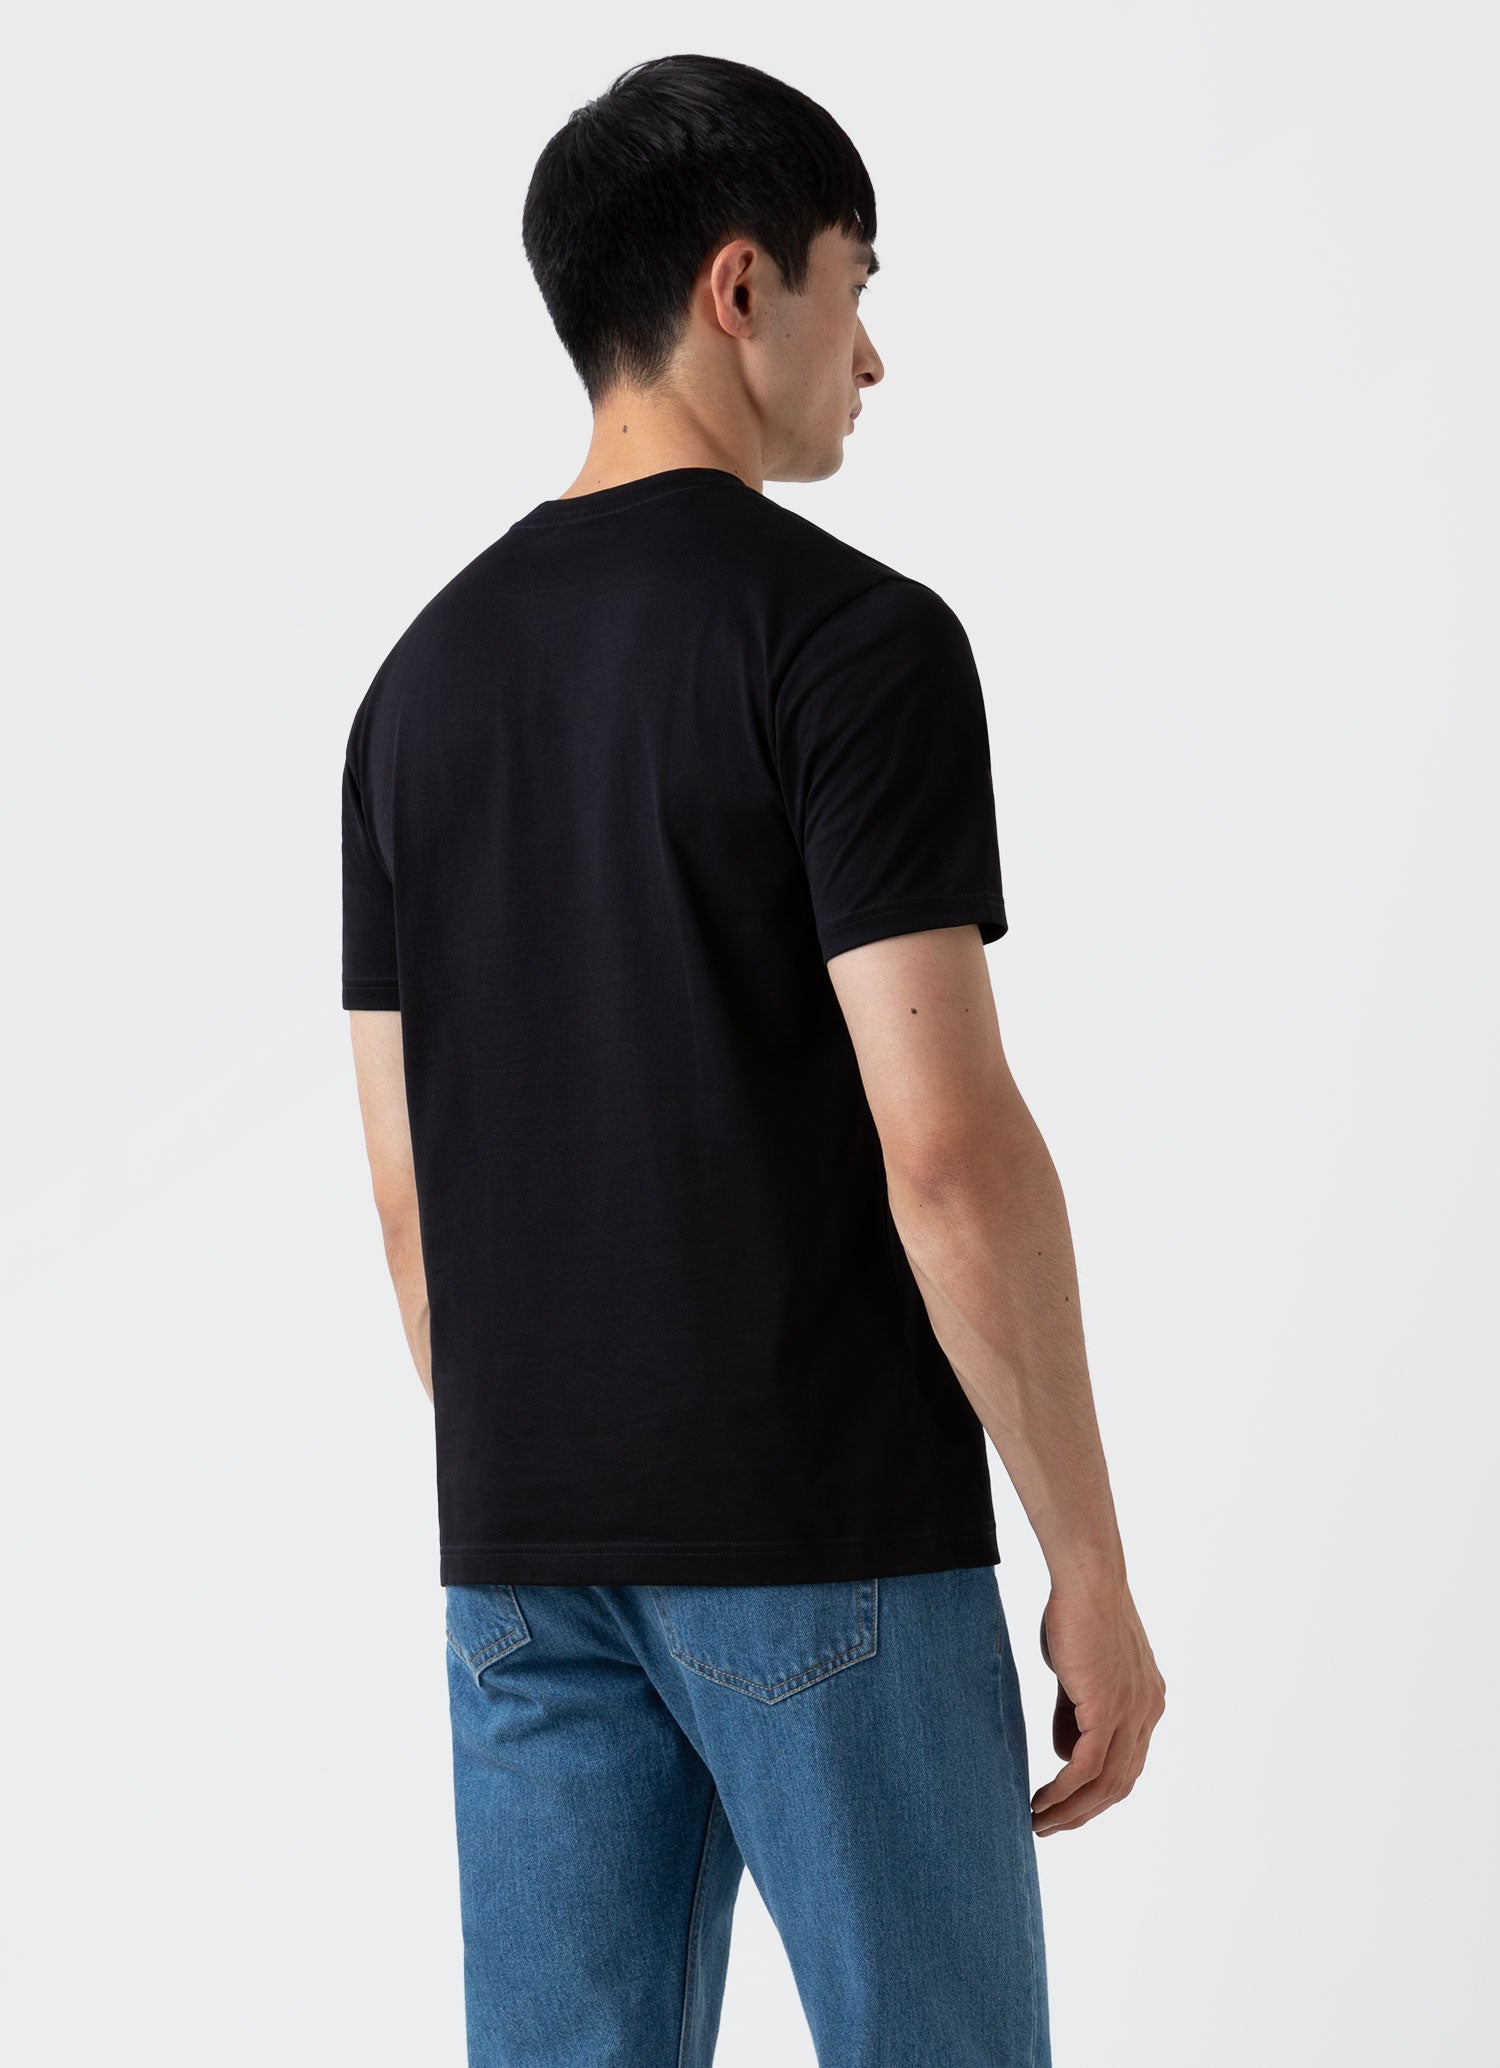 リヴィエラ（ミッドウェイト） Tシャツ （Black）| Sunspel